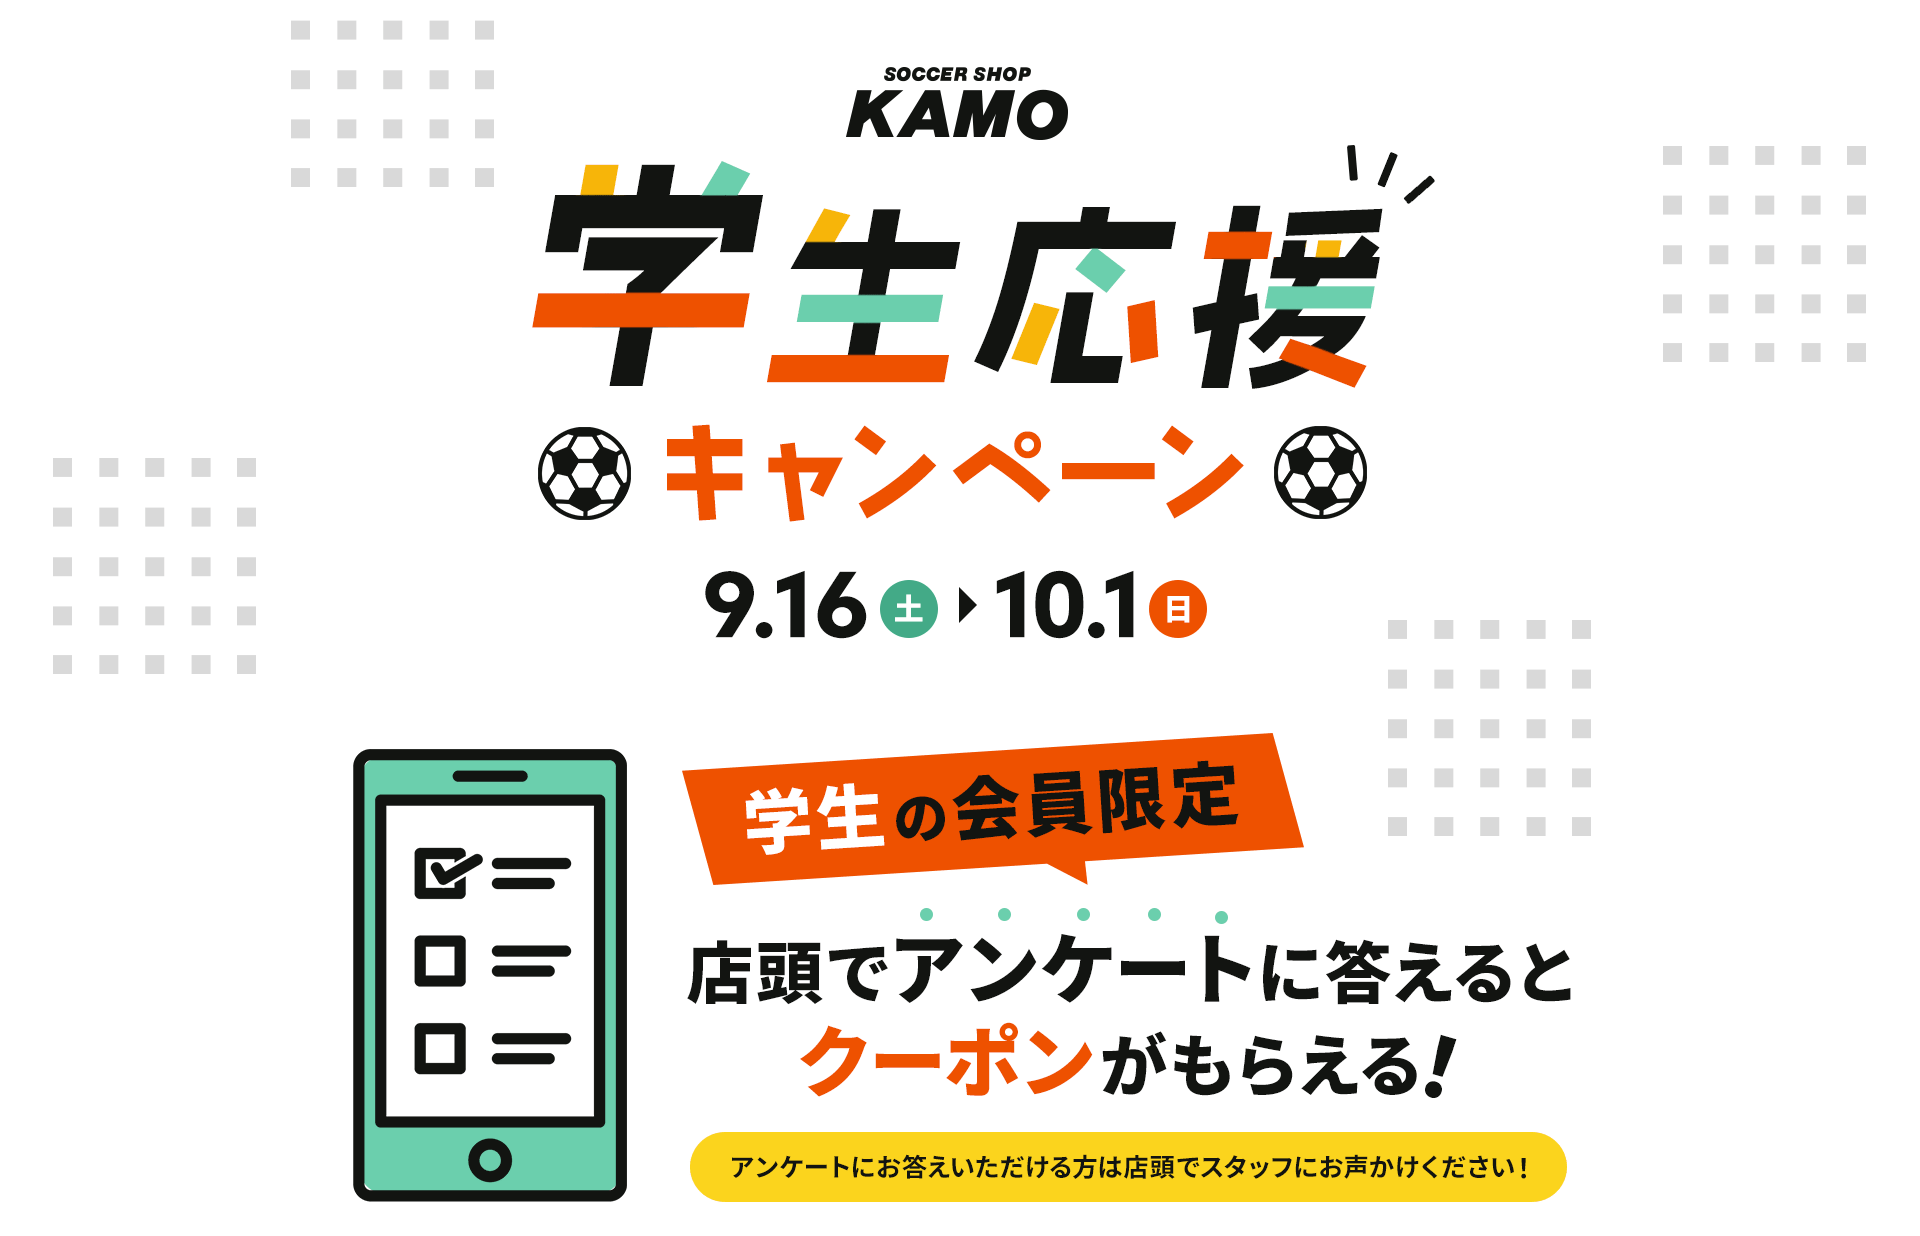 サッカーショップKAMO「学生応援キャンペーン」